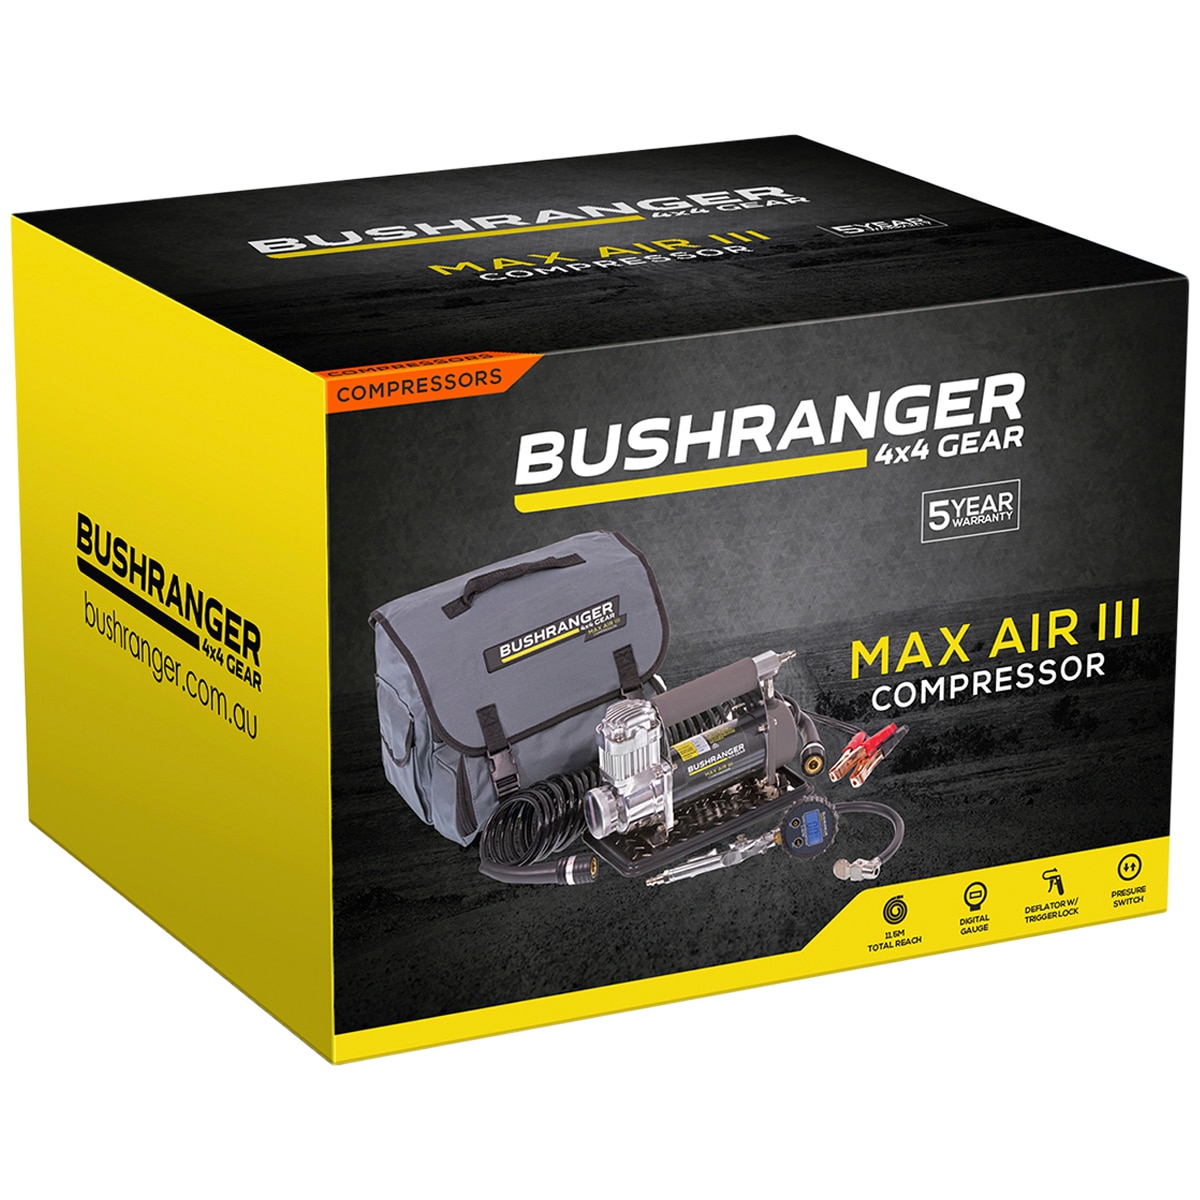 Bushranger® Max Air III Compressor